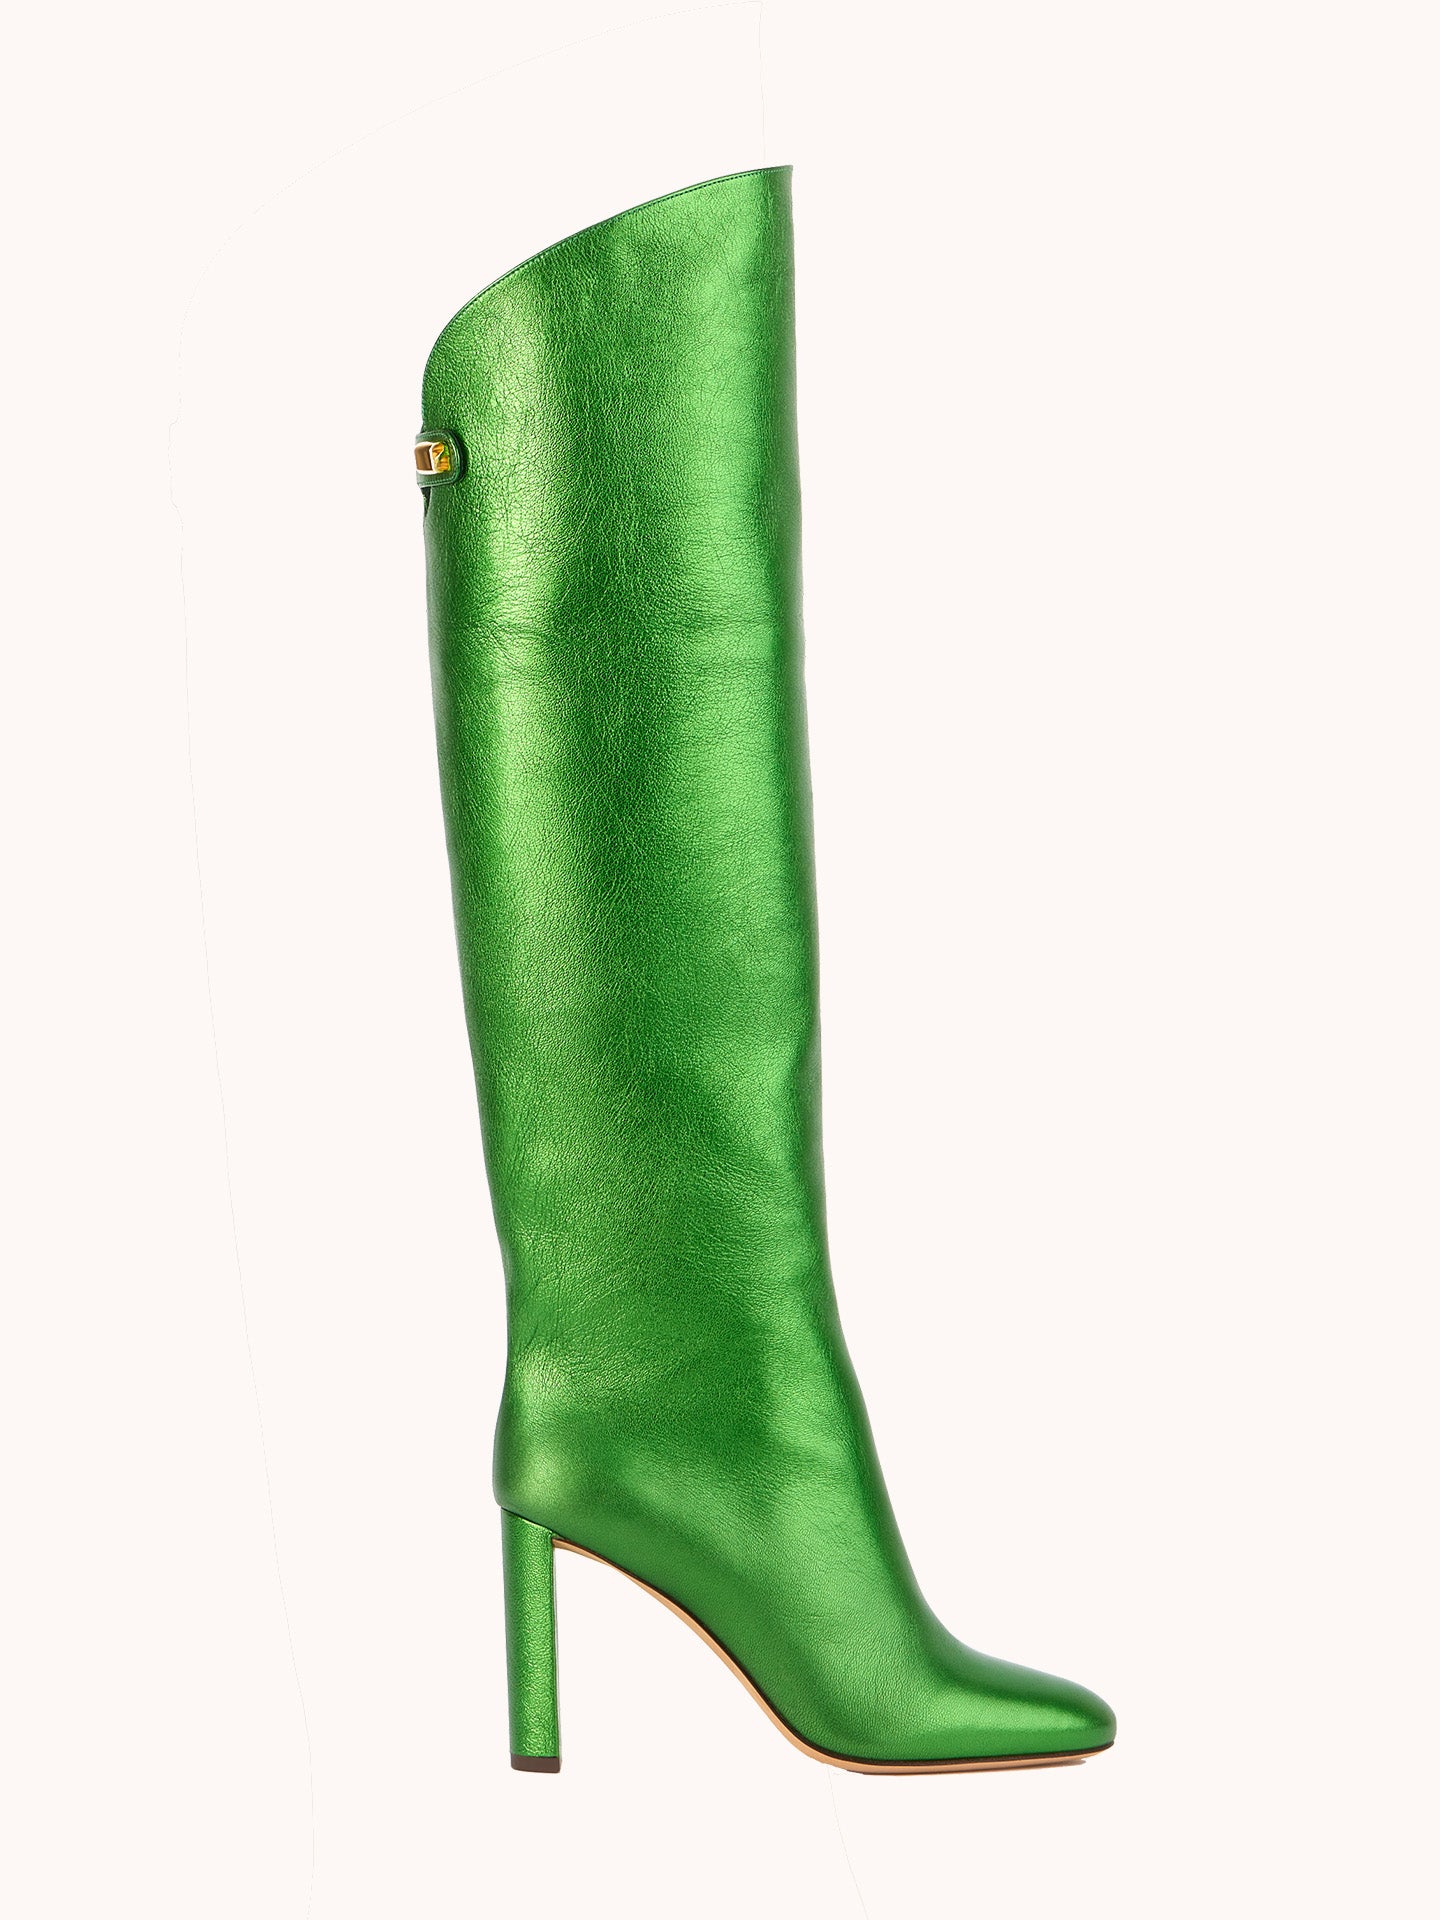 Adriana High-heel Metallic Nappa Green Boots